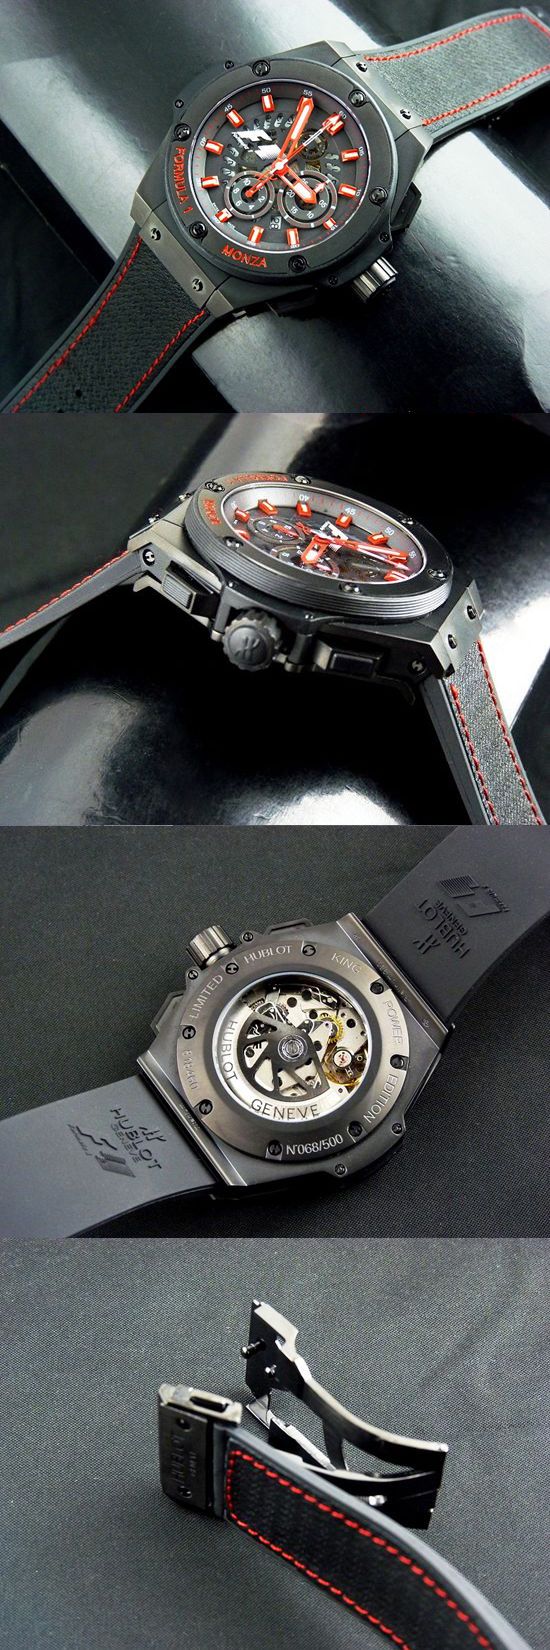 おしゃれなブランド時計がウブロ-ビッグバン-HUBLOT-710-CI-0110-RX-MZA10-男性用を提供します.